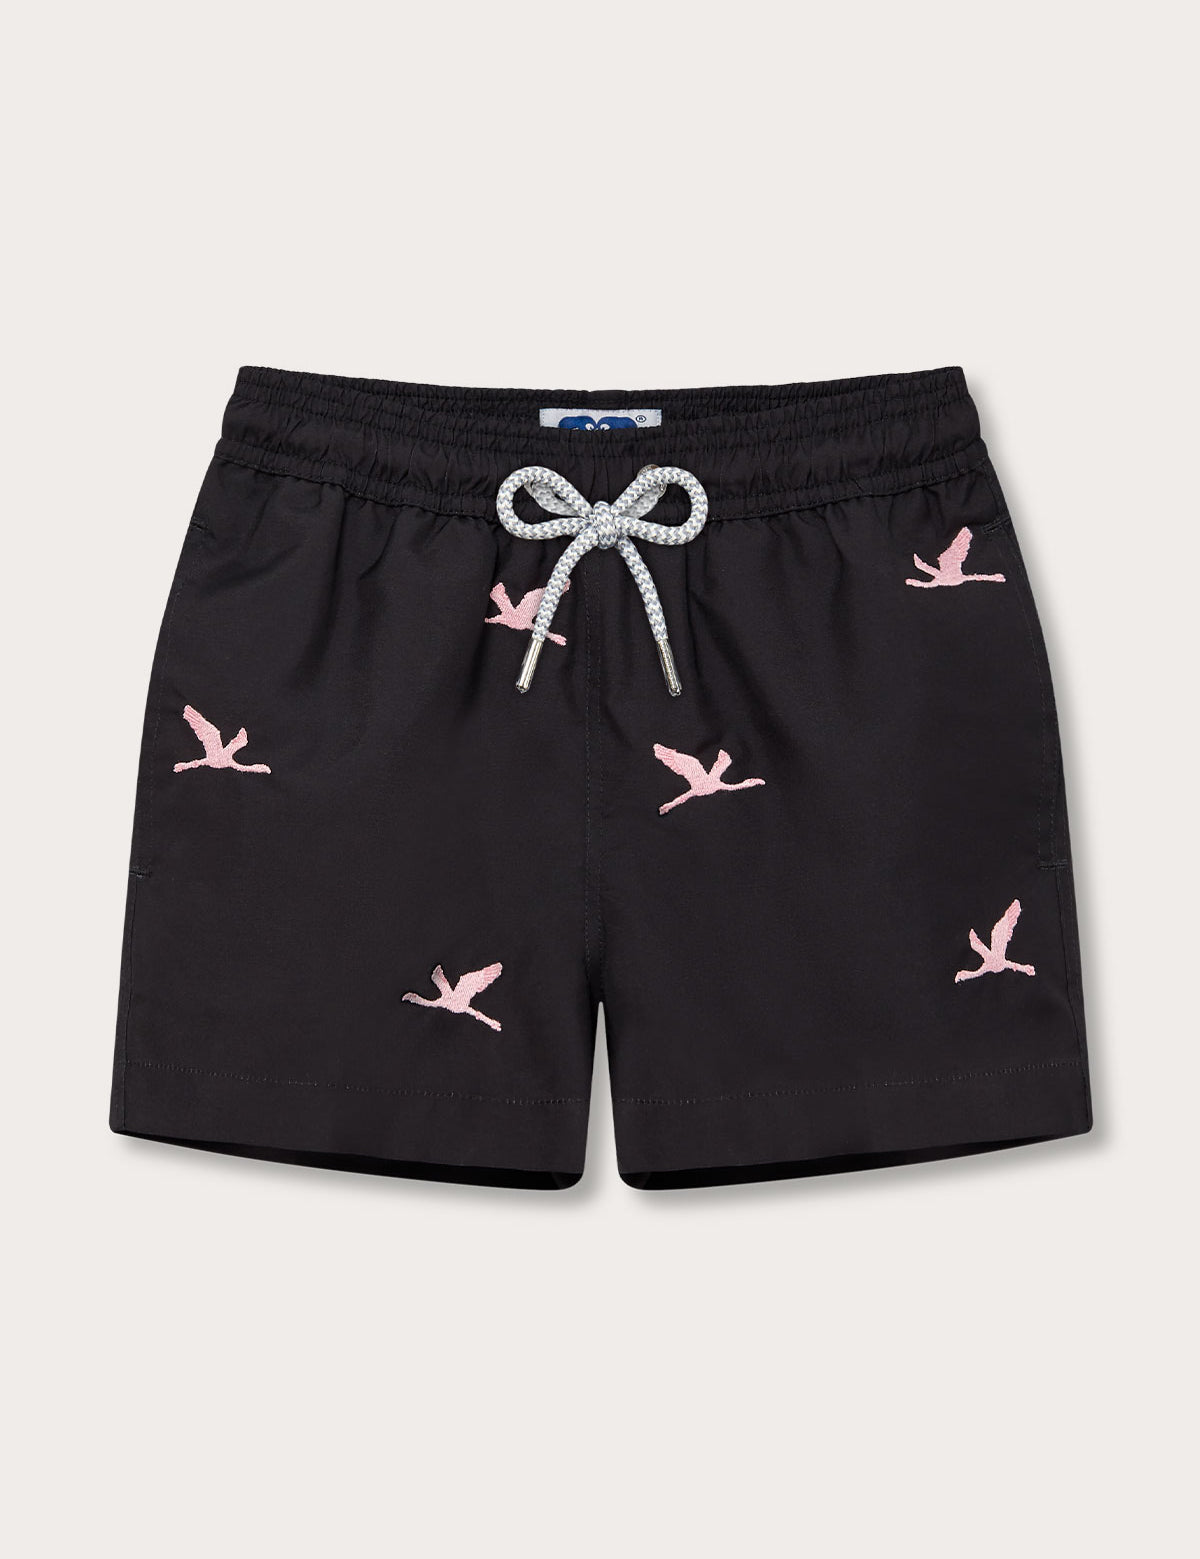 Boys Lake Nakuru Staniel Swim Shorts in black with pink flamingo patterns and drawstring waist.